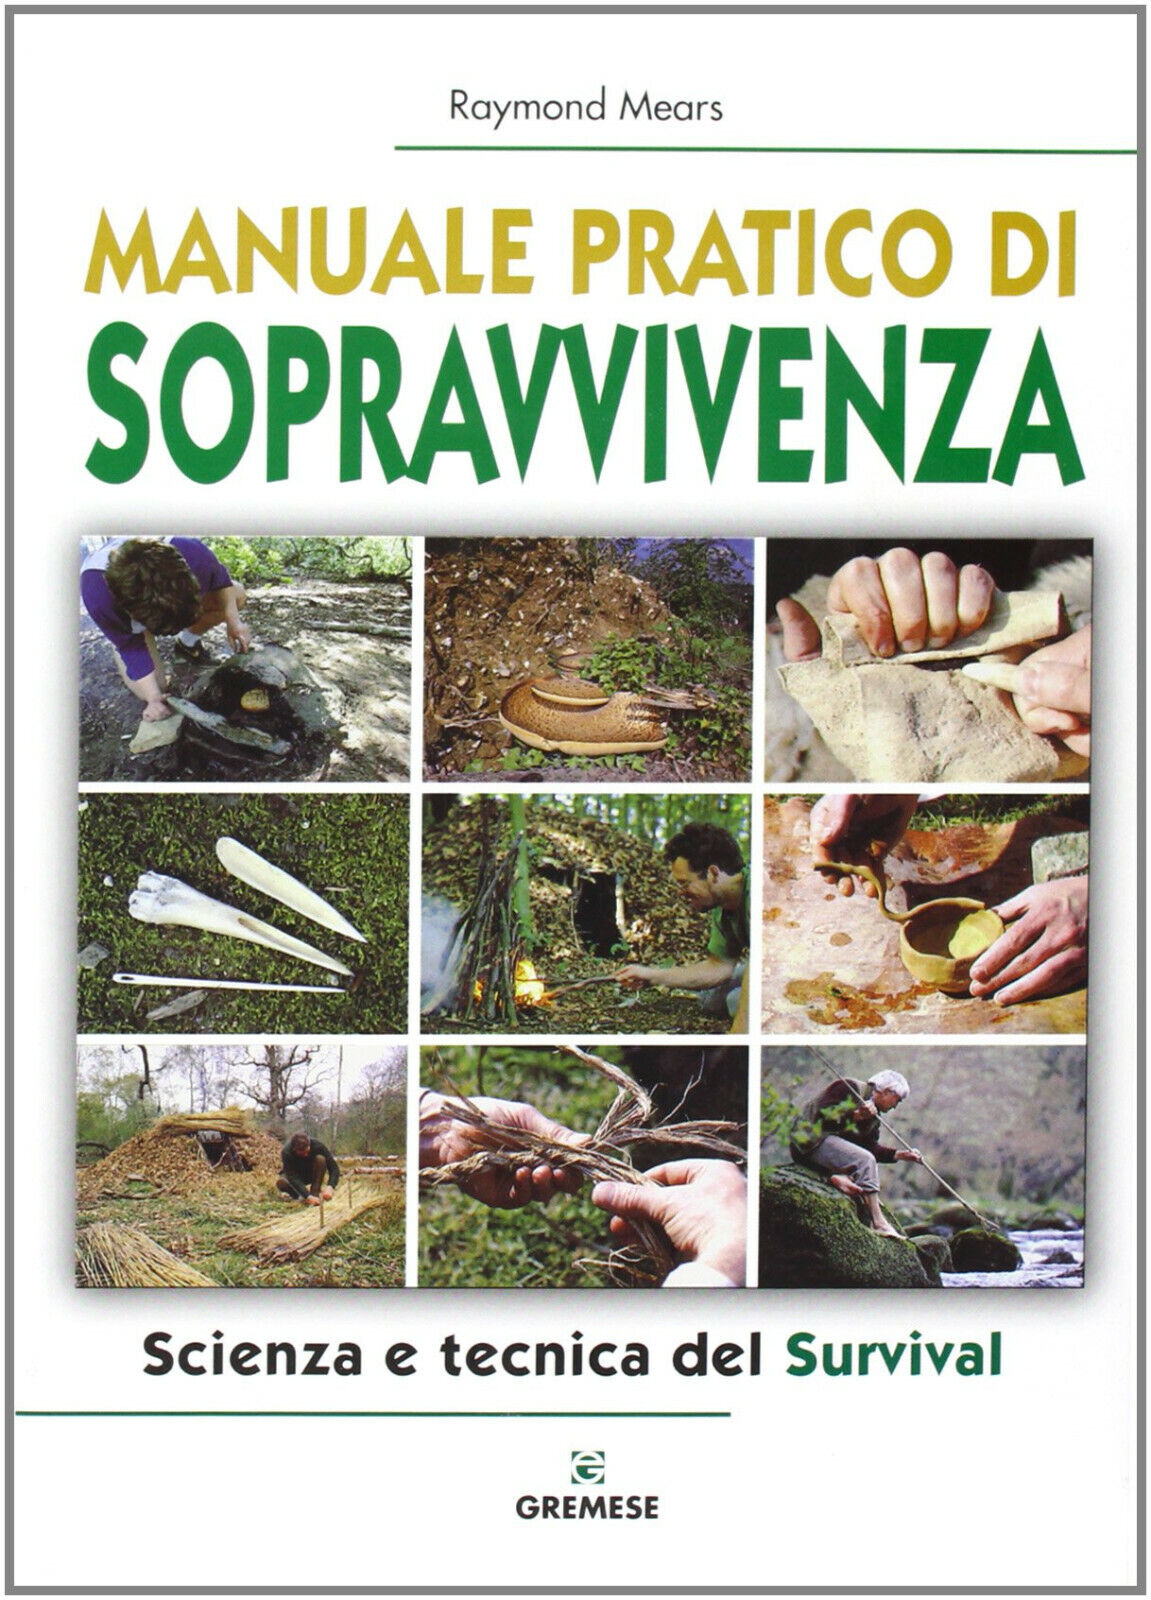 Manuale pratico di sopravvivenza - Raymond Mears - Gremese Editore, 2008